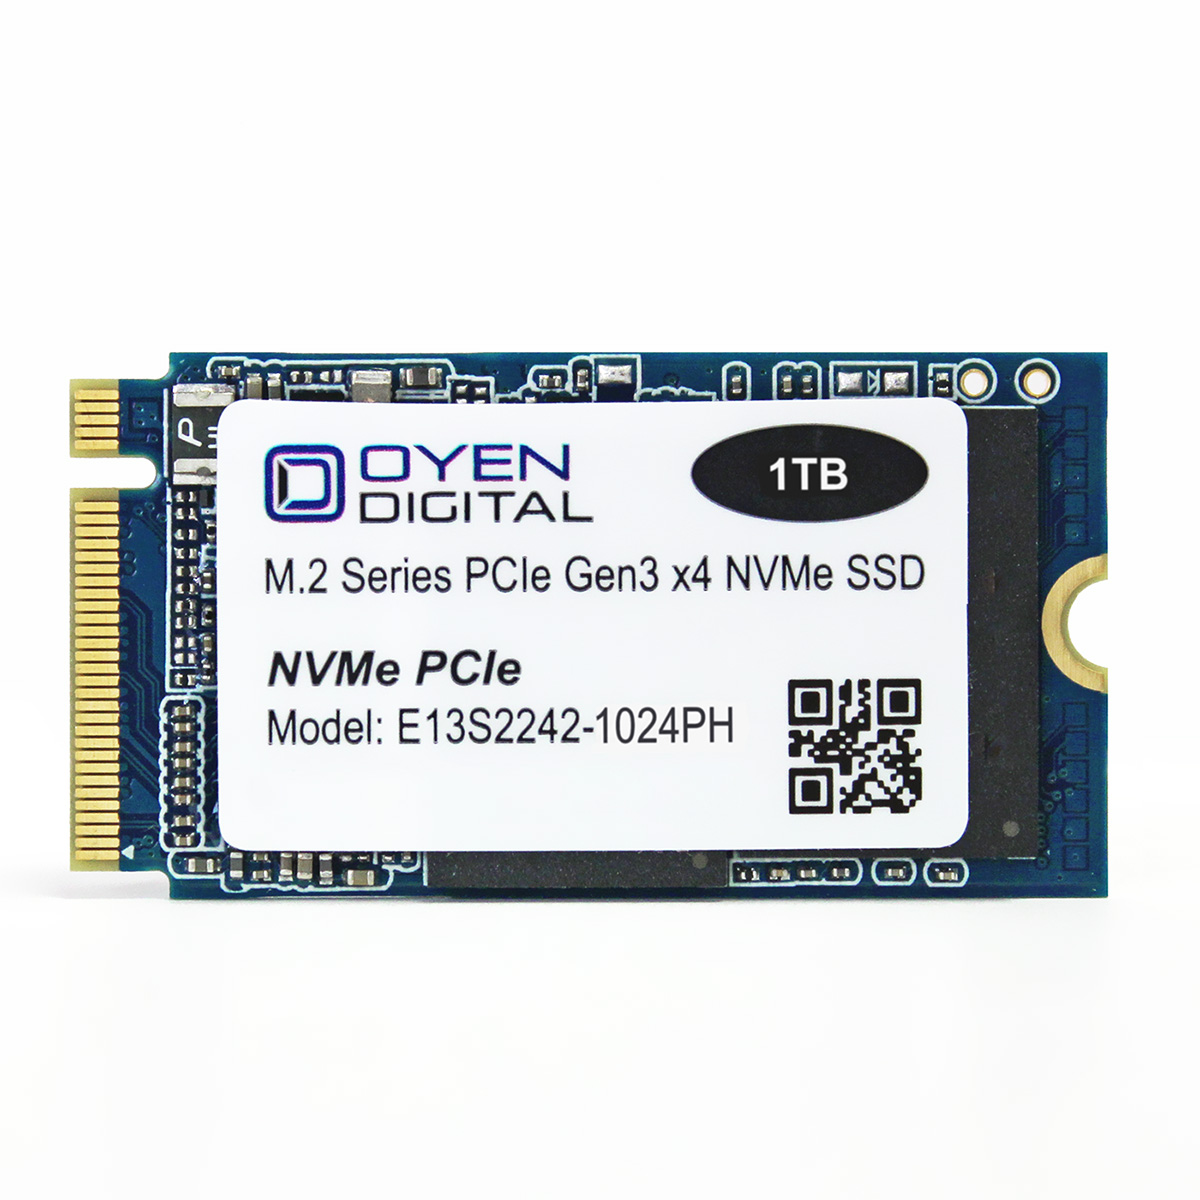 Digital: Digital M.2 2242 NVMe PCIe 3D TLC SSD